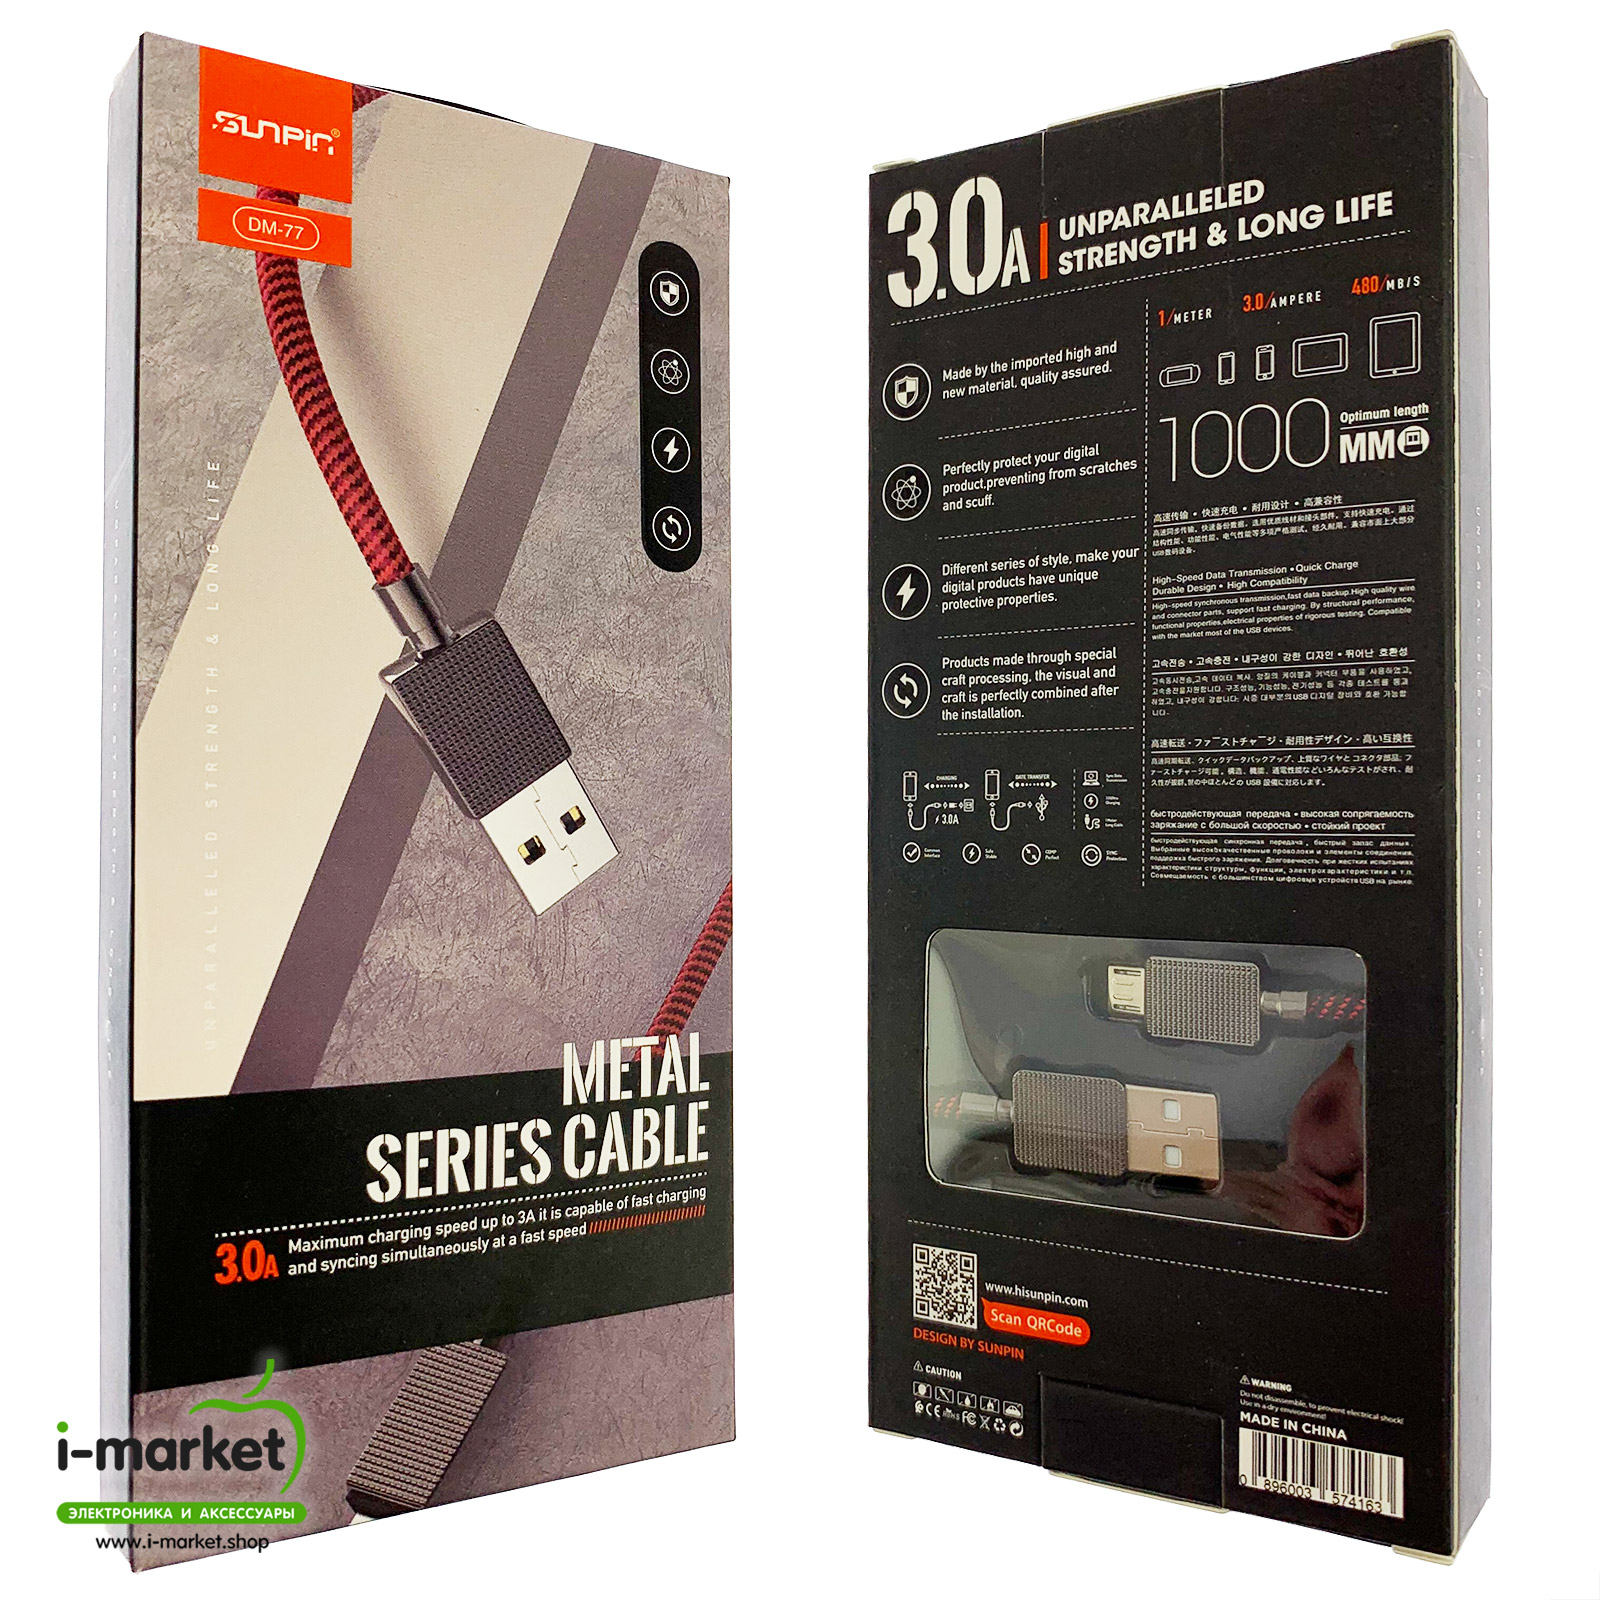 SUNPIN DM-77 USB Дата-кабель для Micro-USB, 3.0A, 480 Mb/s, армированная нейлоновая прочная оплетка, длина кабеля 1 метр, цвет черно-красный.